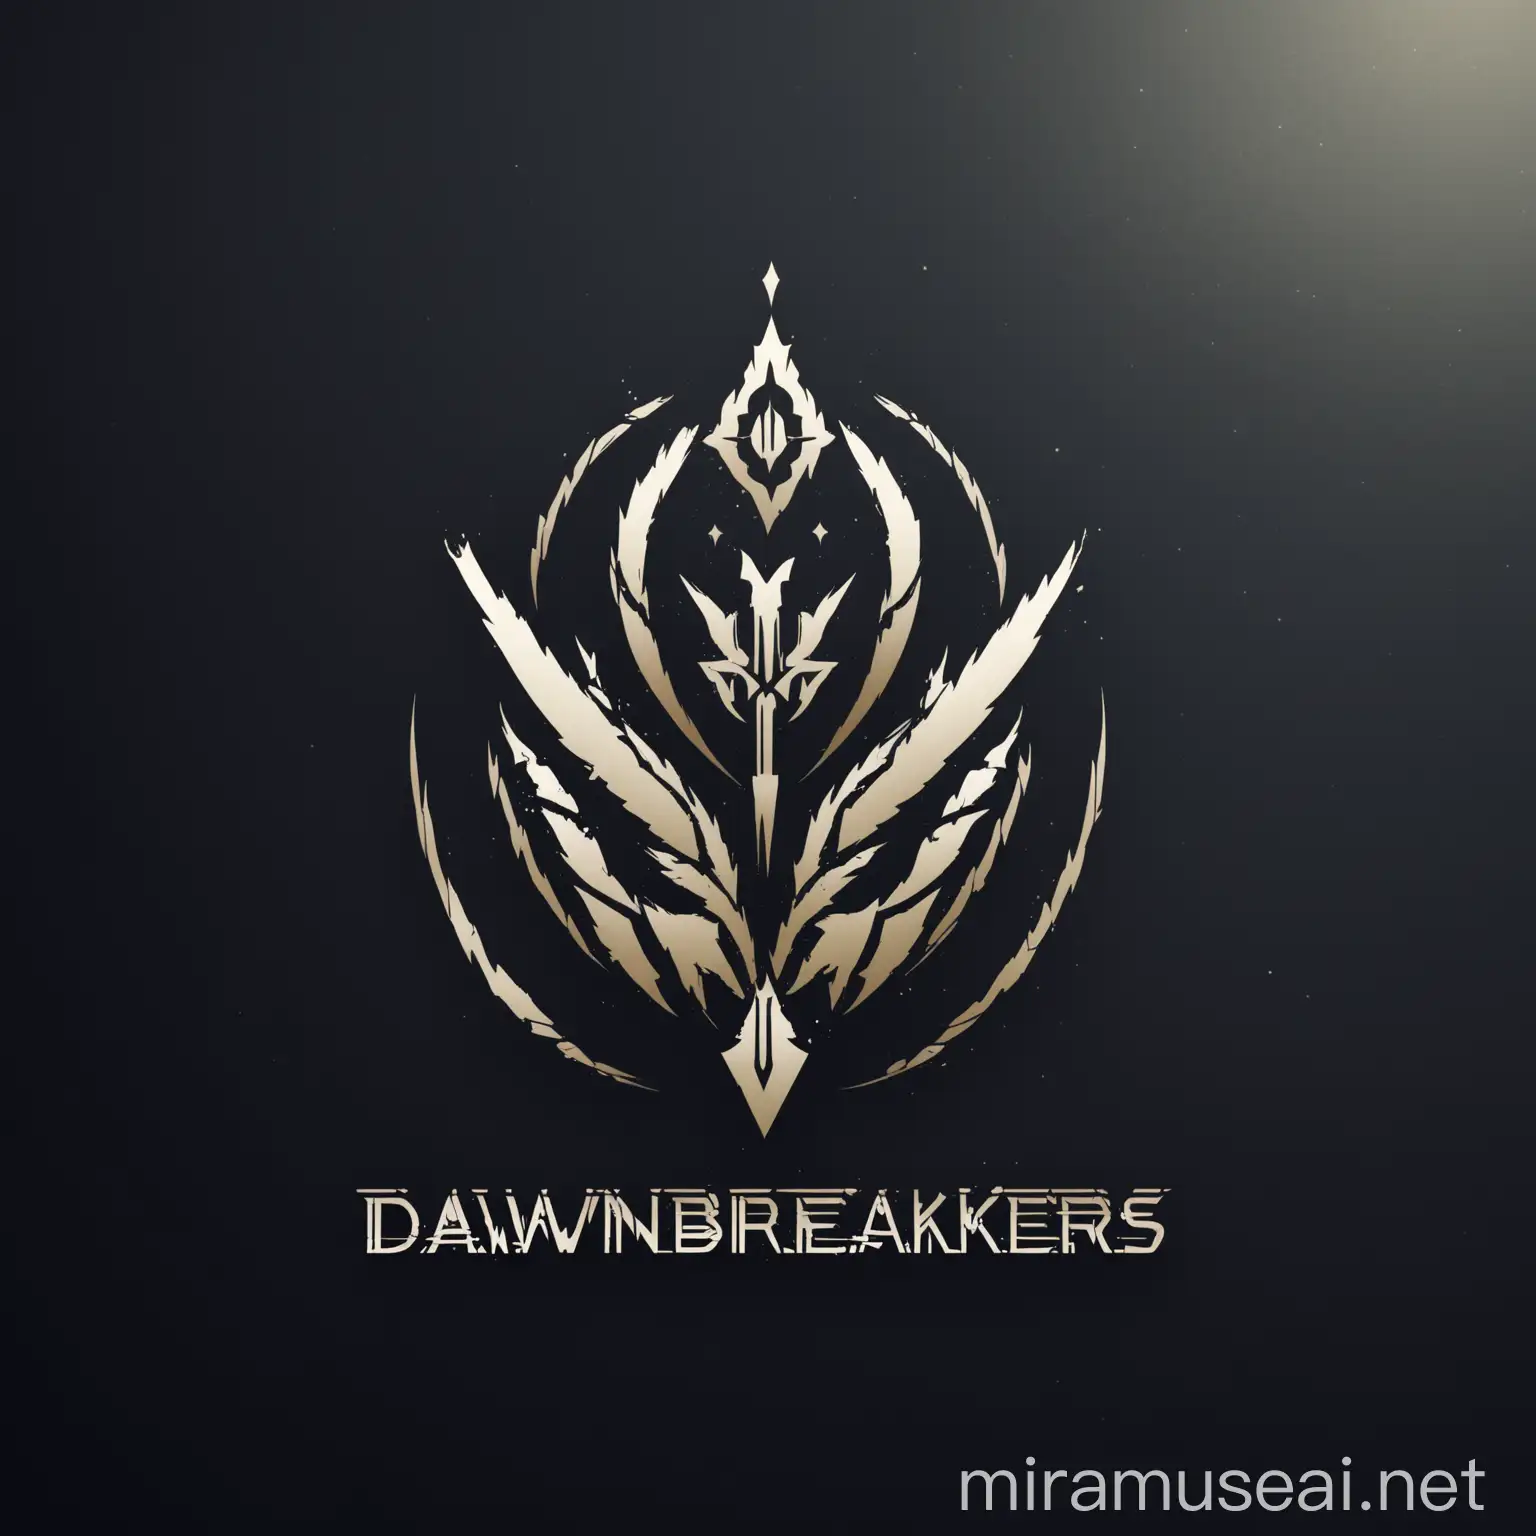 buatkan logo yang bernama (Dawnbreakers) deskripsi
Melambangkan awal yang baru dan meninggalkan masa lalu yang kelam.
Menandakan optimisme dan harapan untuk masa depan yang lebih cerah.
buatkan secara sederhana dan modern

